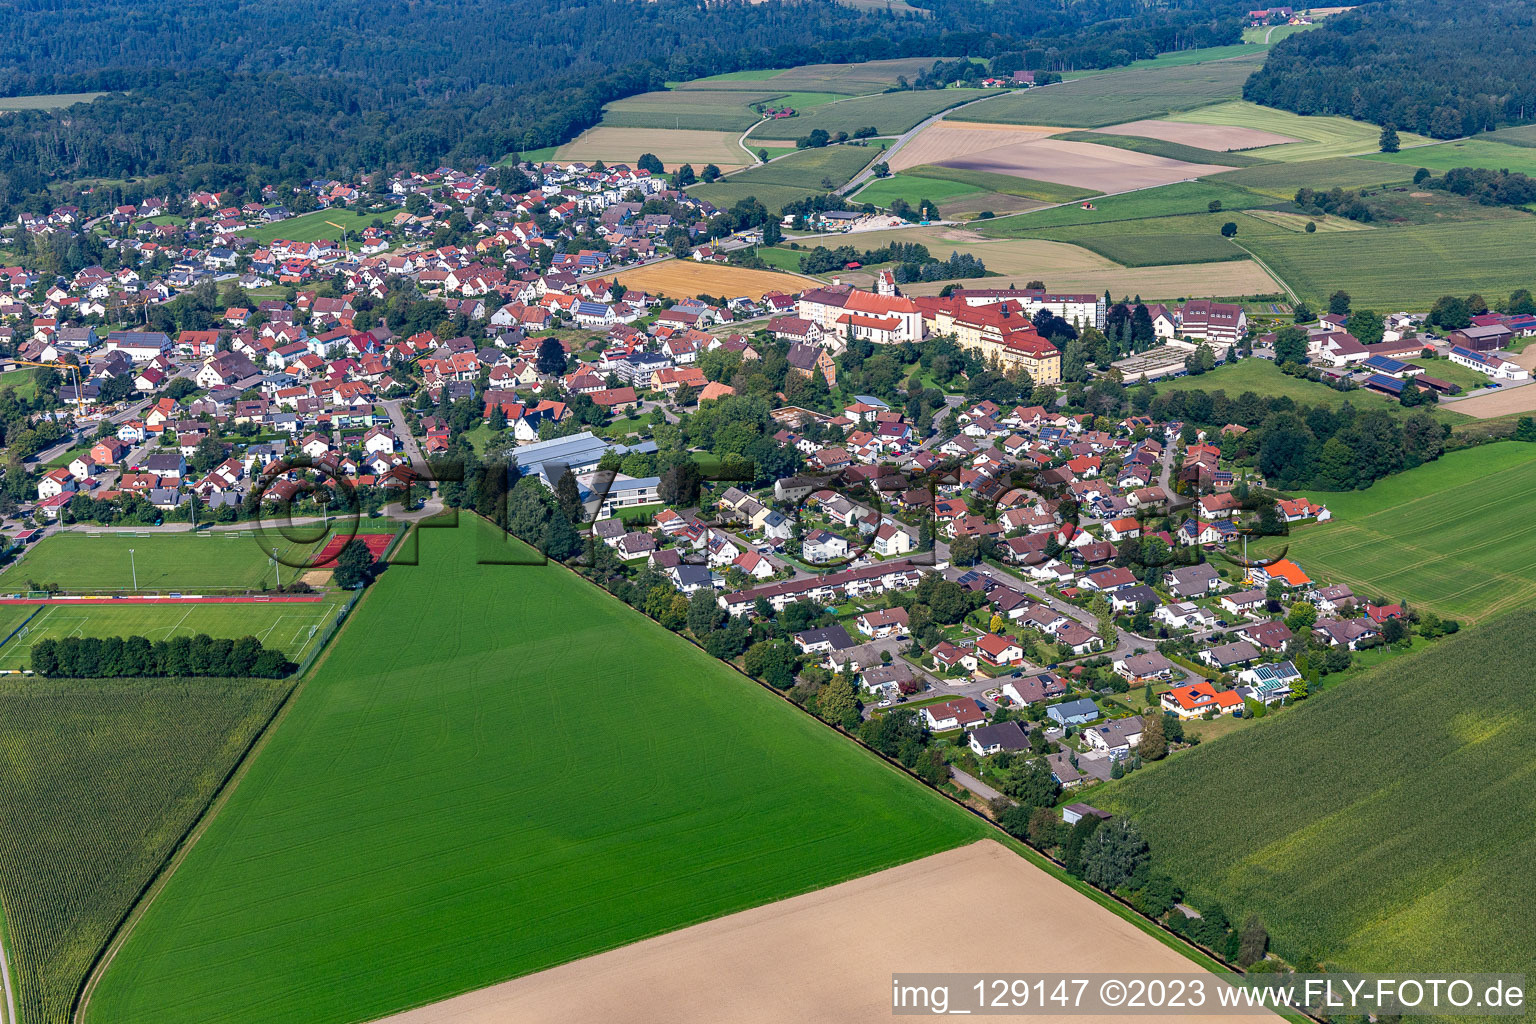 Vue aérienne de Vue de la commune en bordure des champs et zones agricoles en Reute à le quartier Reute in Bad Waldsee dans le département Bade-Wurtemberg, Allemagne